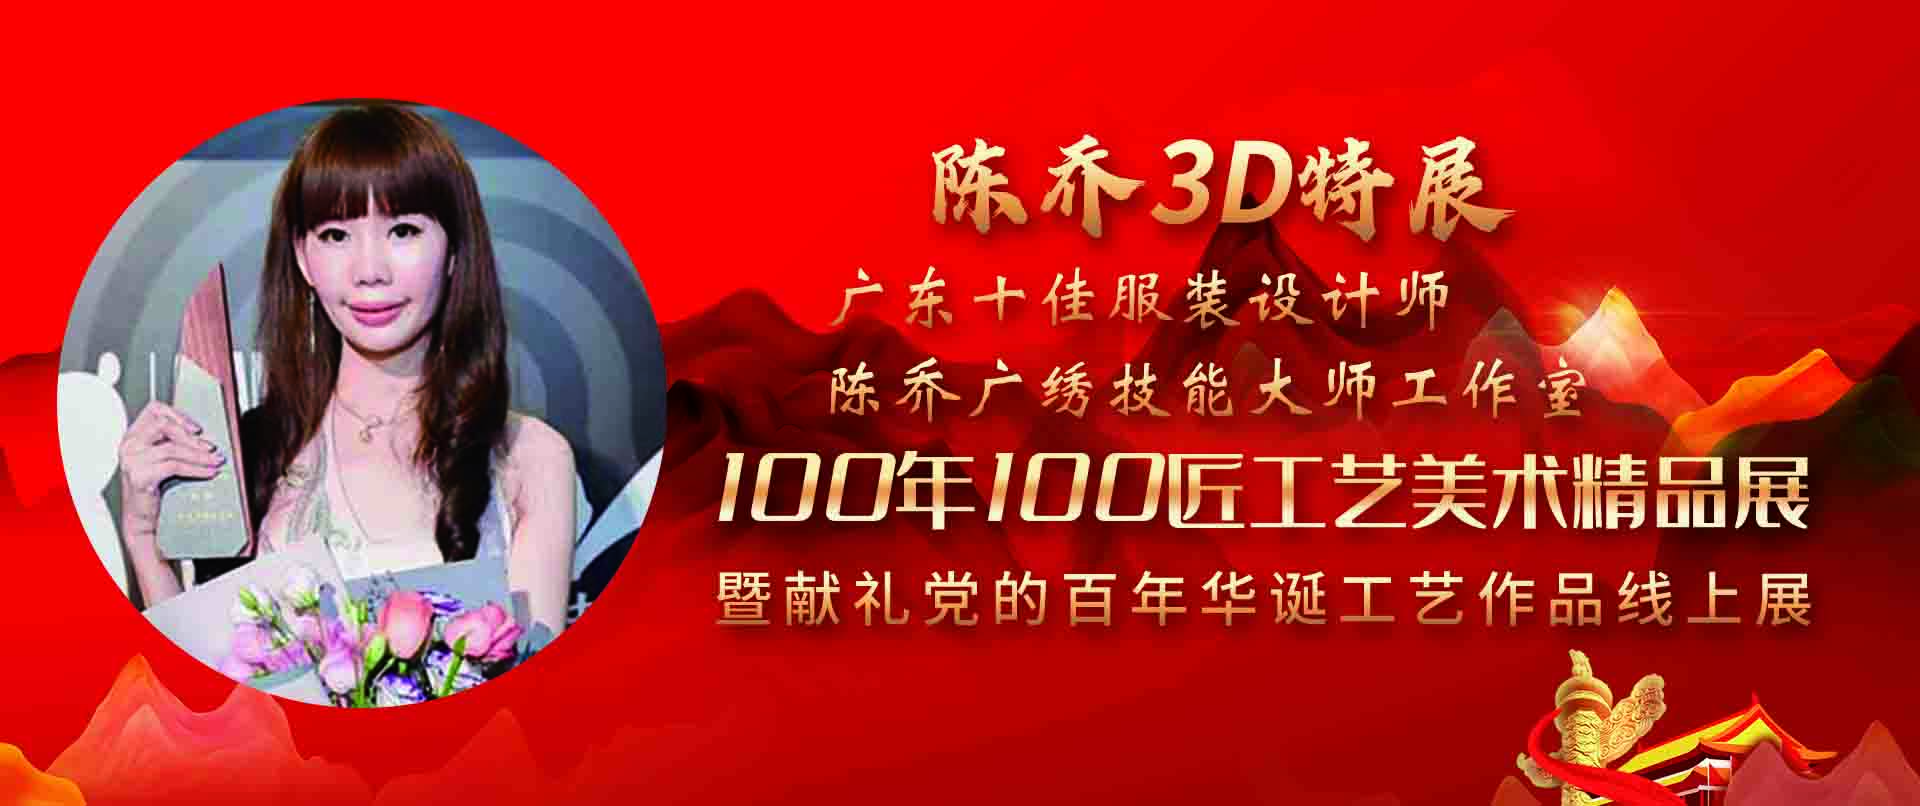 陈乔3D特展-100年100匠工艺美术精品展